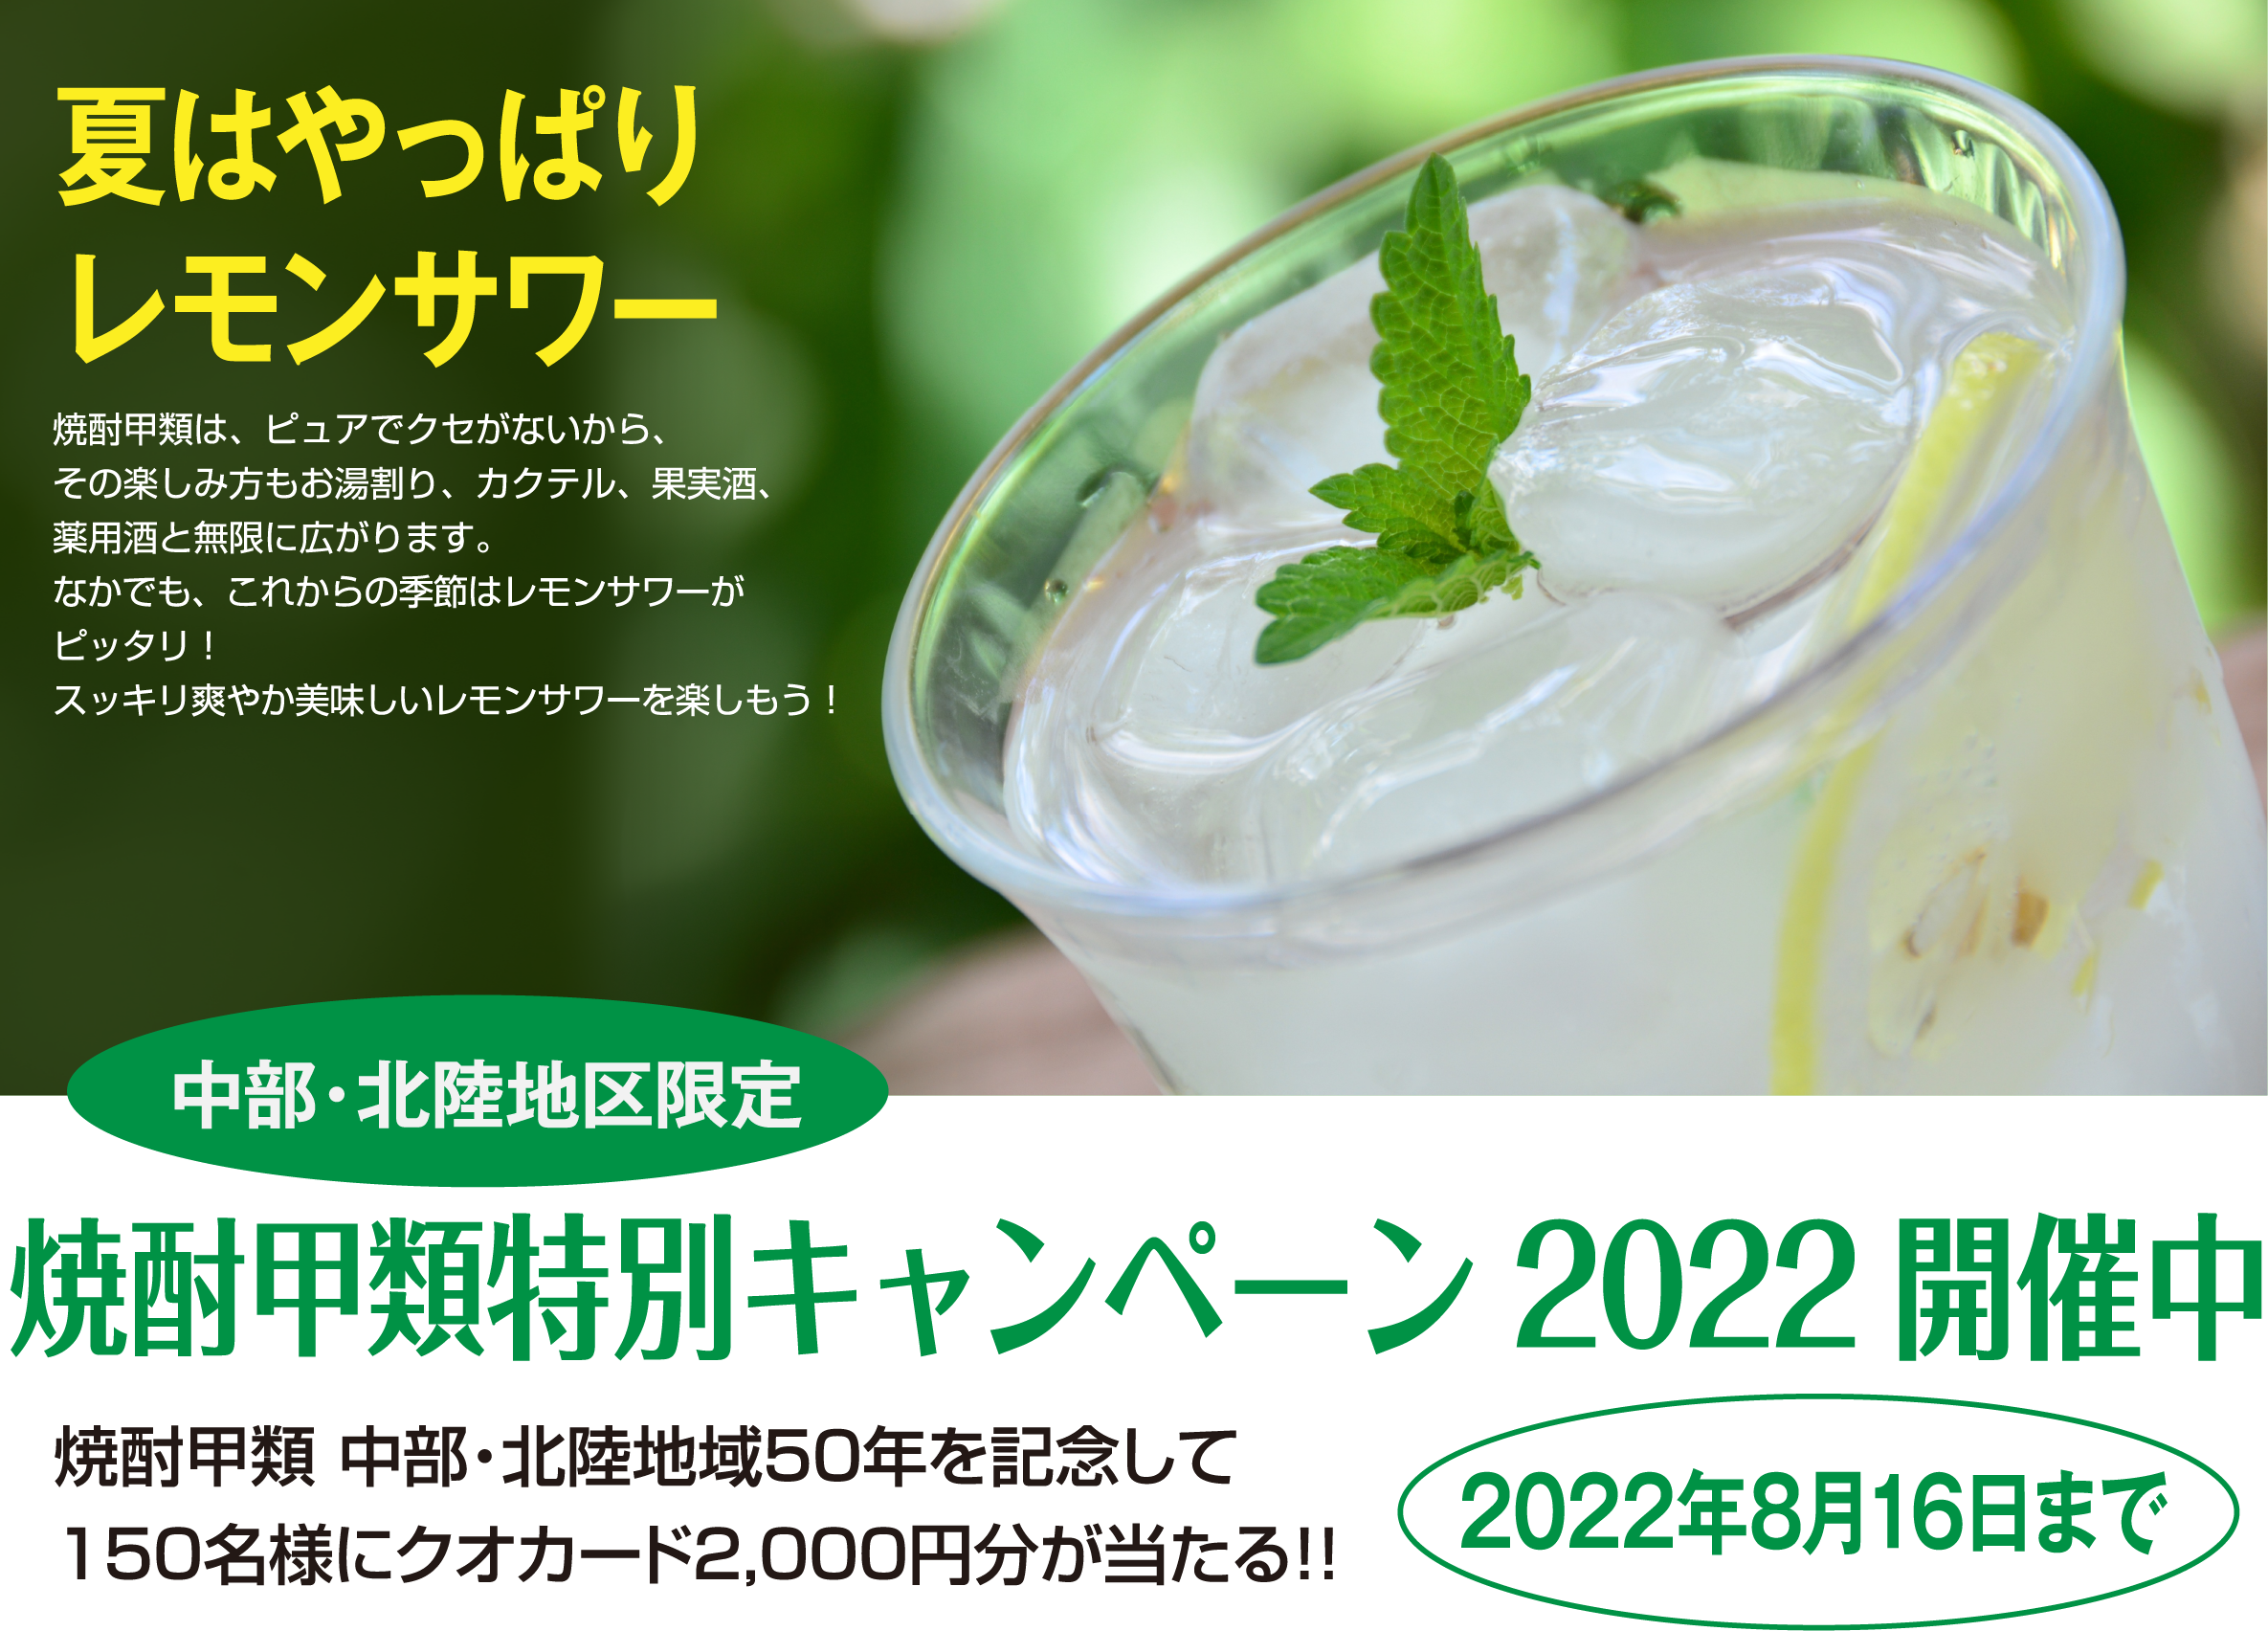 2022焼酎甲類 特別キャンペーン